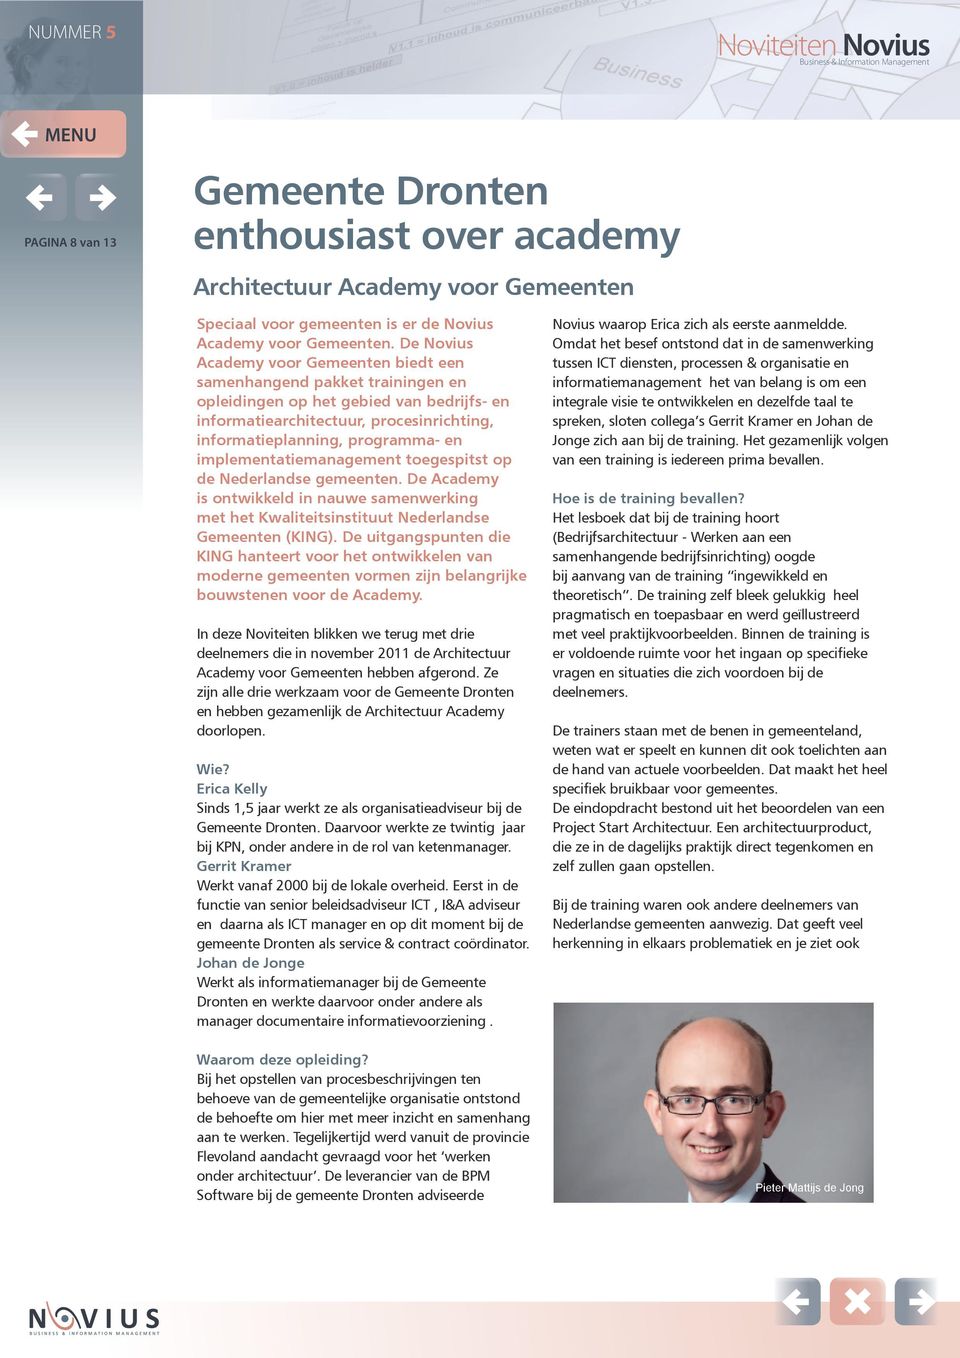 implementatiemanagement toegespitst op de Nederlandse gemeenten. De Academy is ontwikkeld in nauwe samenwerking met het Kwaliteitsinstituut Nederlandse Gemeenten (KING).